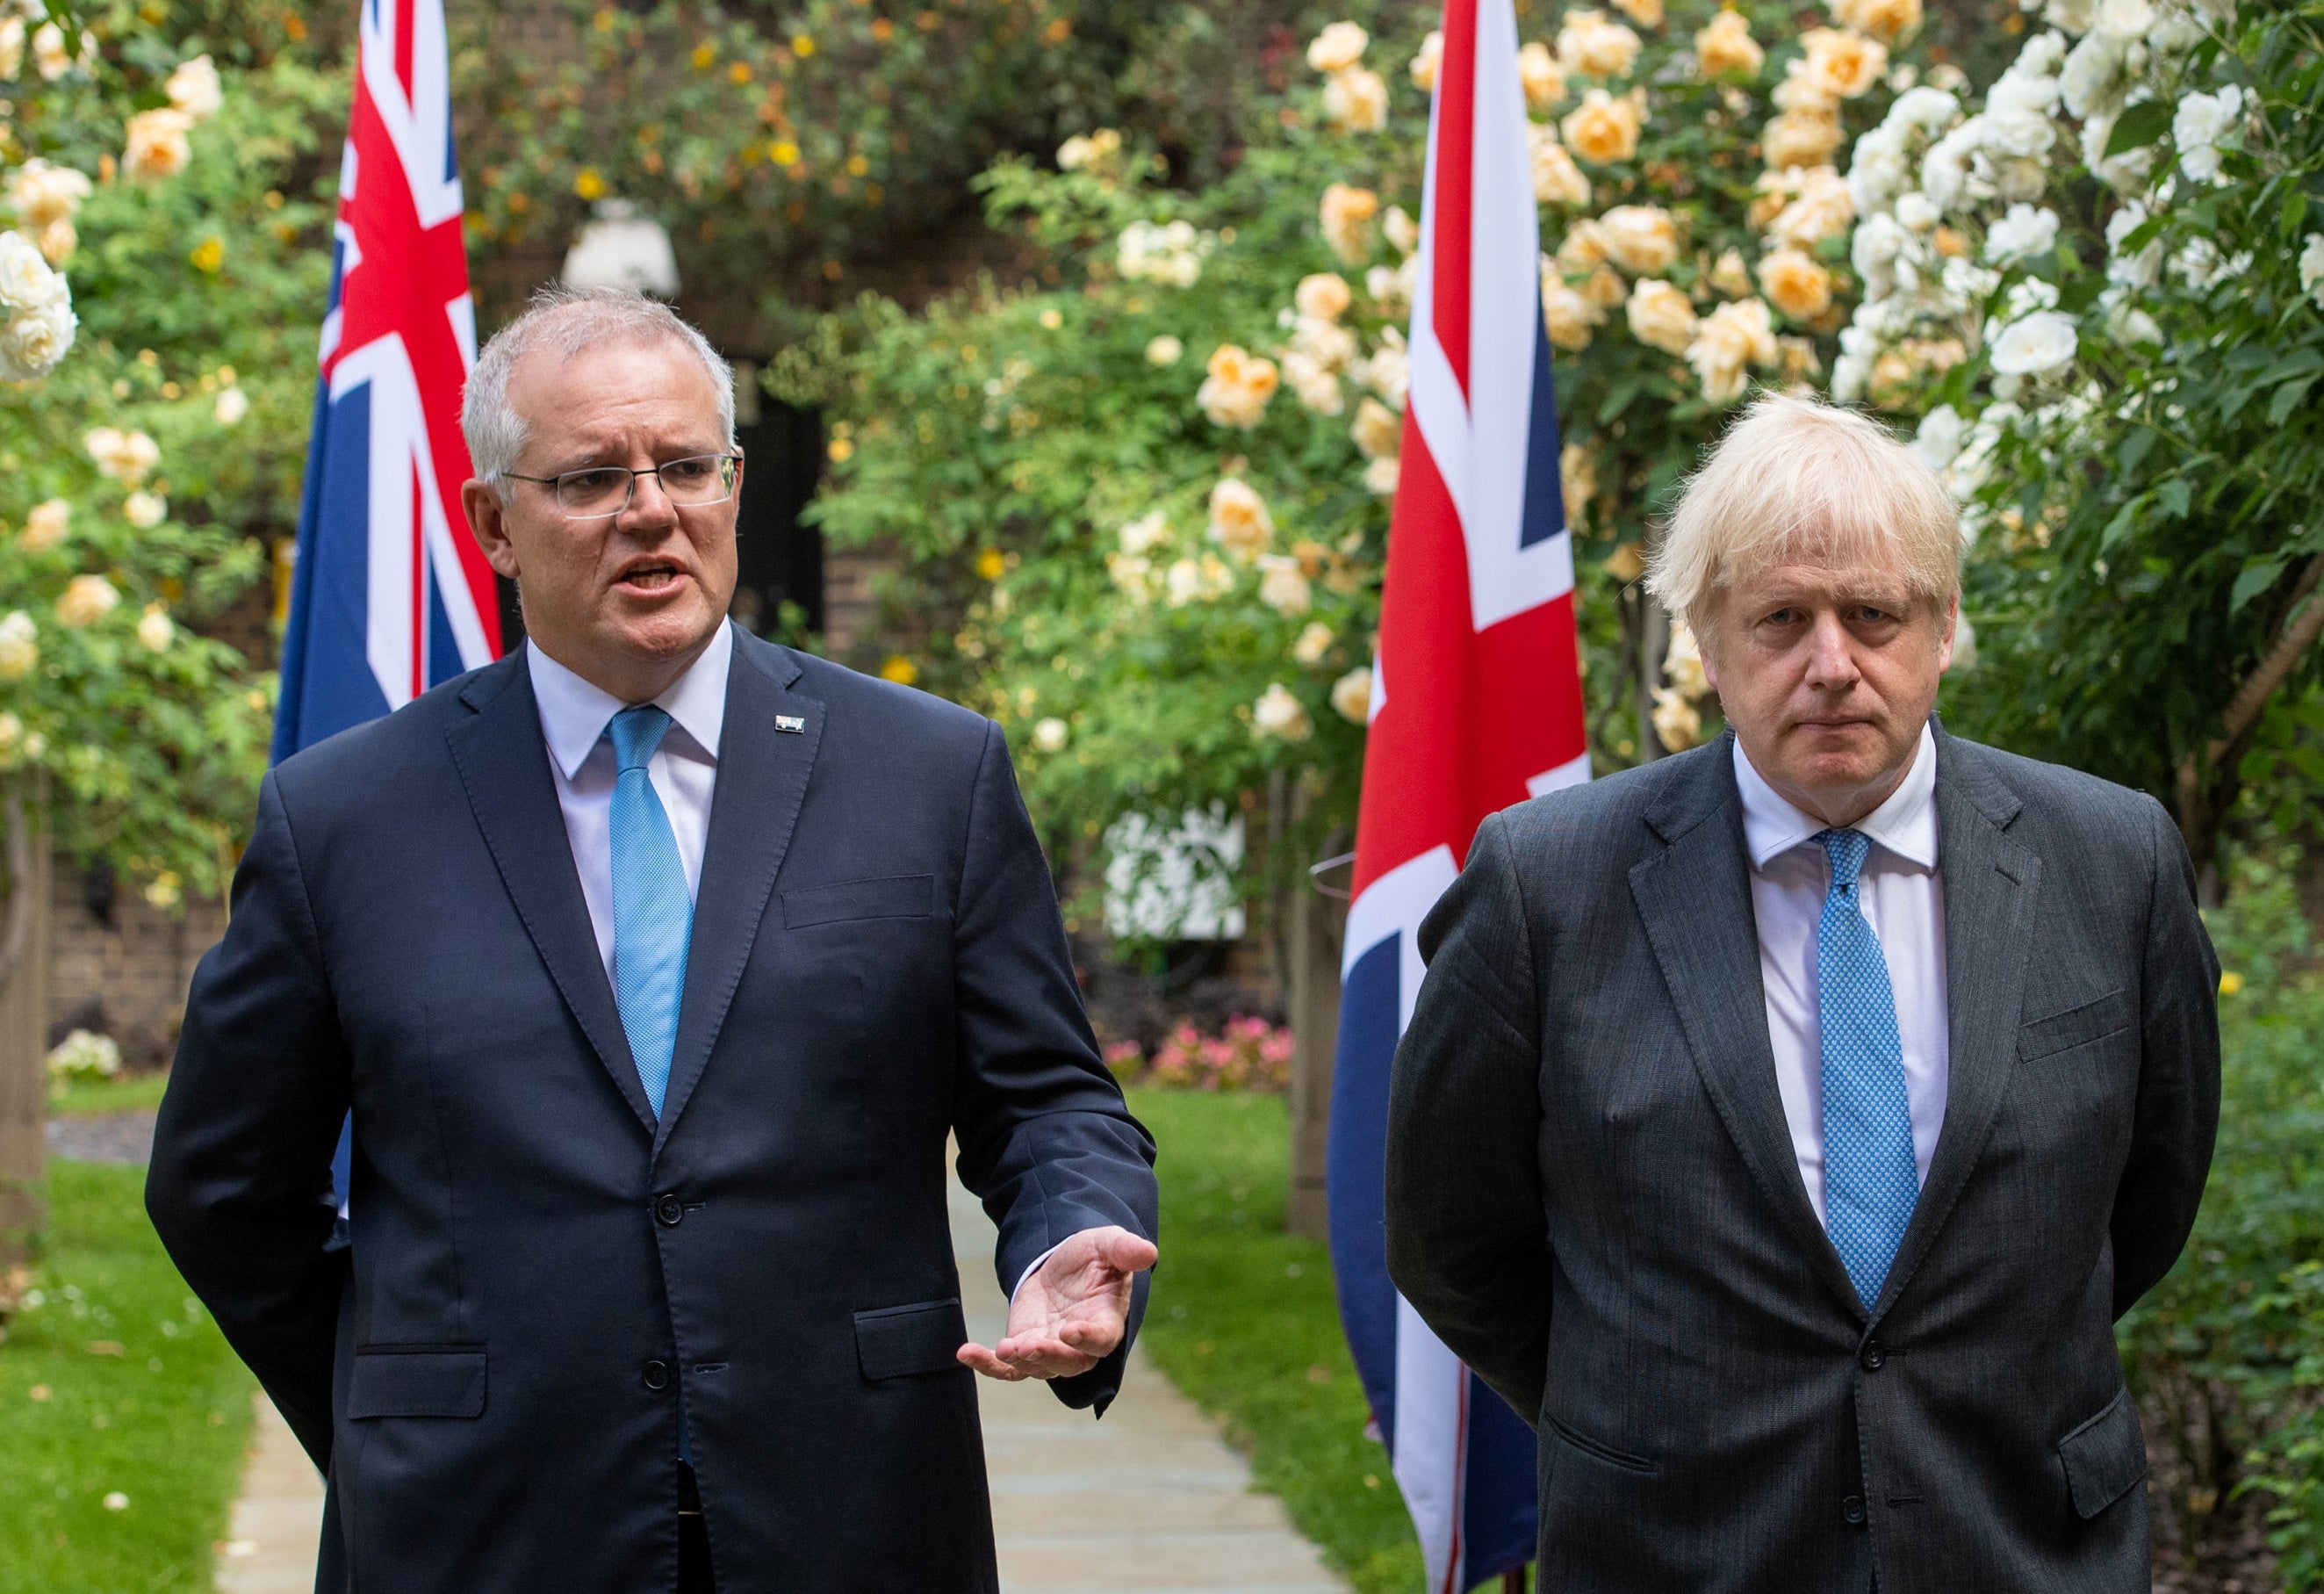 Boris Johnson looks on as Australia’s Prime Minister Scott Morrison speaks at No 10 on Tuesday